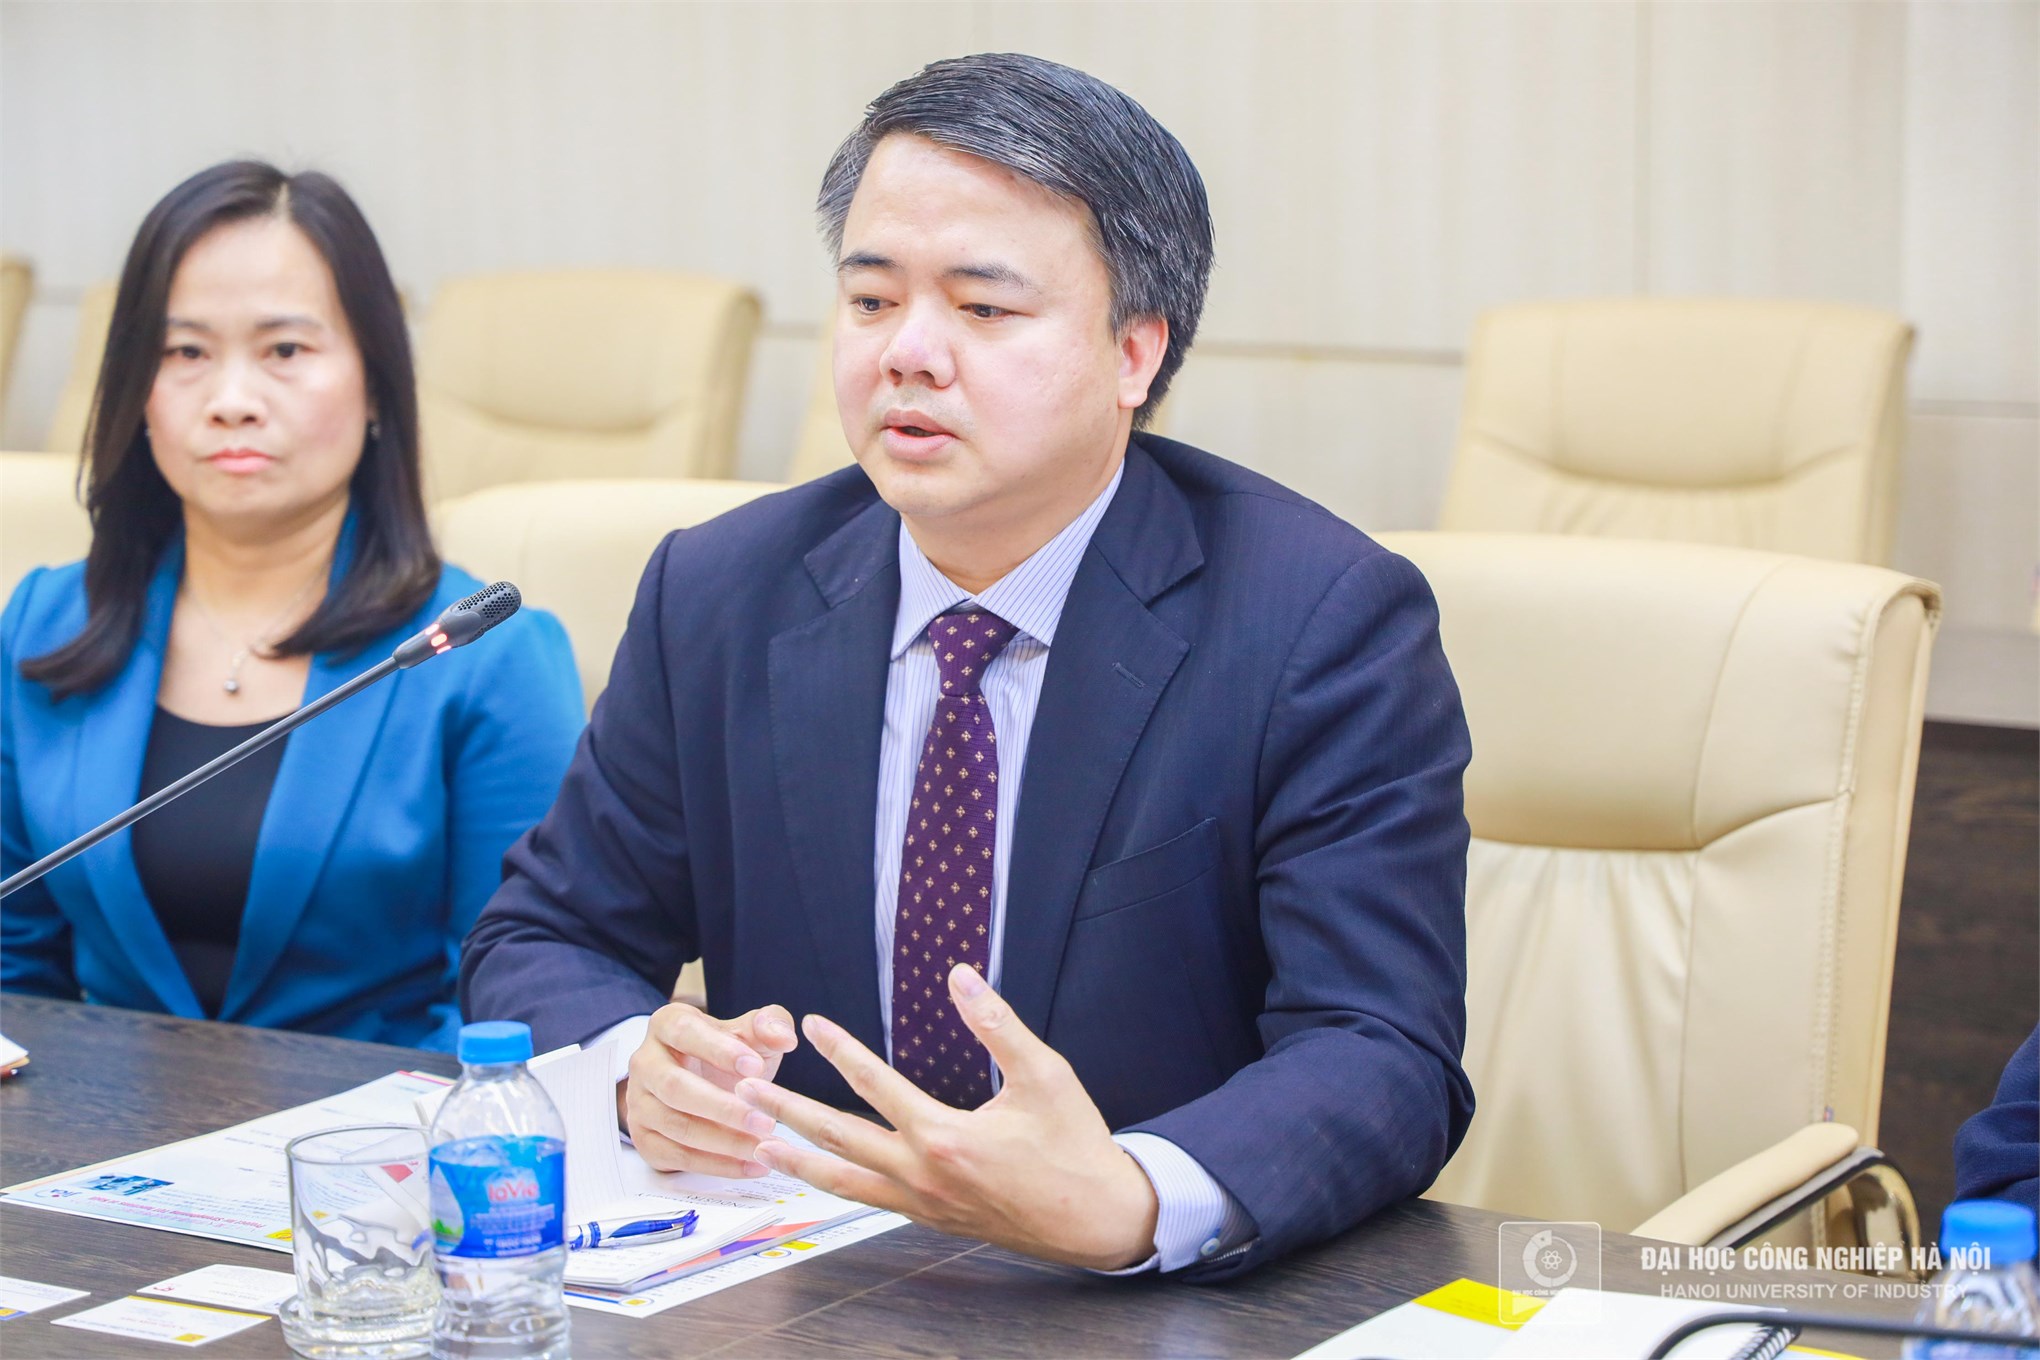 Thỏa thuận hợp tác giữa Trường Đại học Công nghiệp Hà Nội Công ty GKM Việt Nam và Công ty Toprank